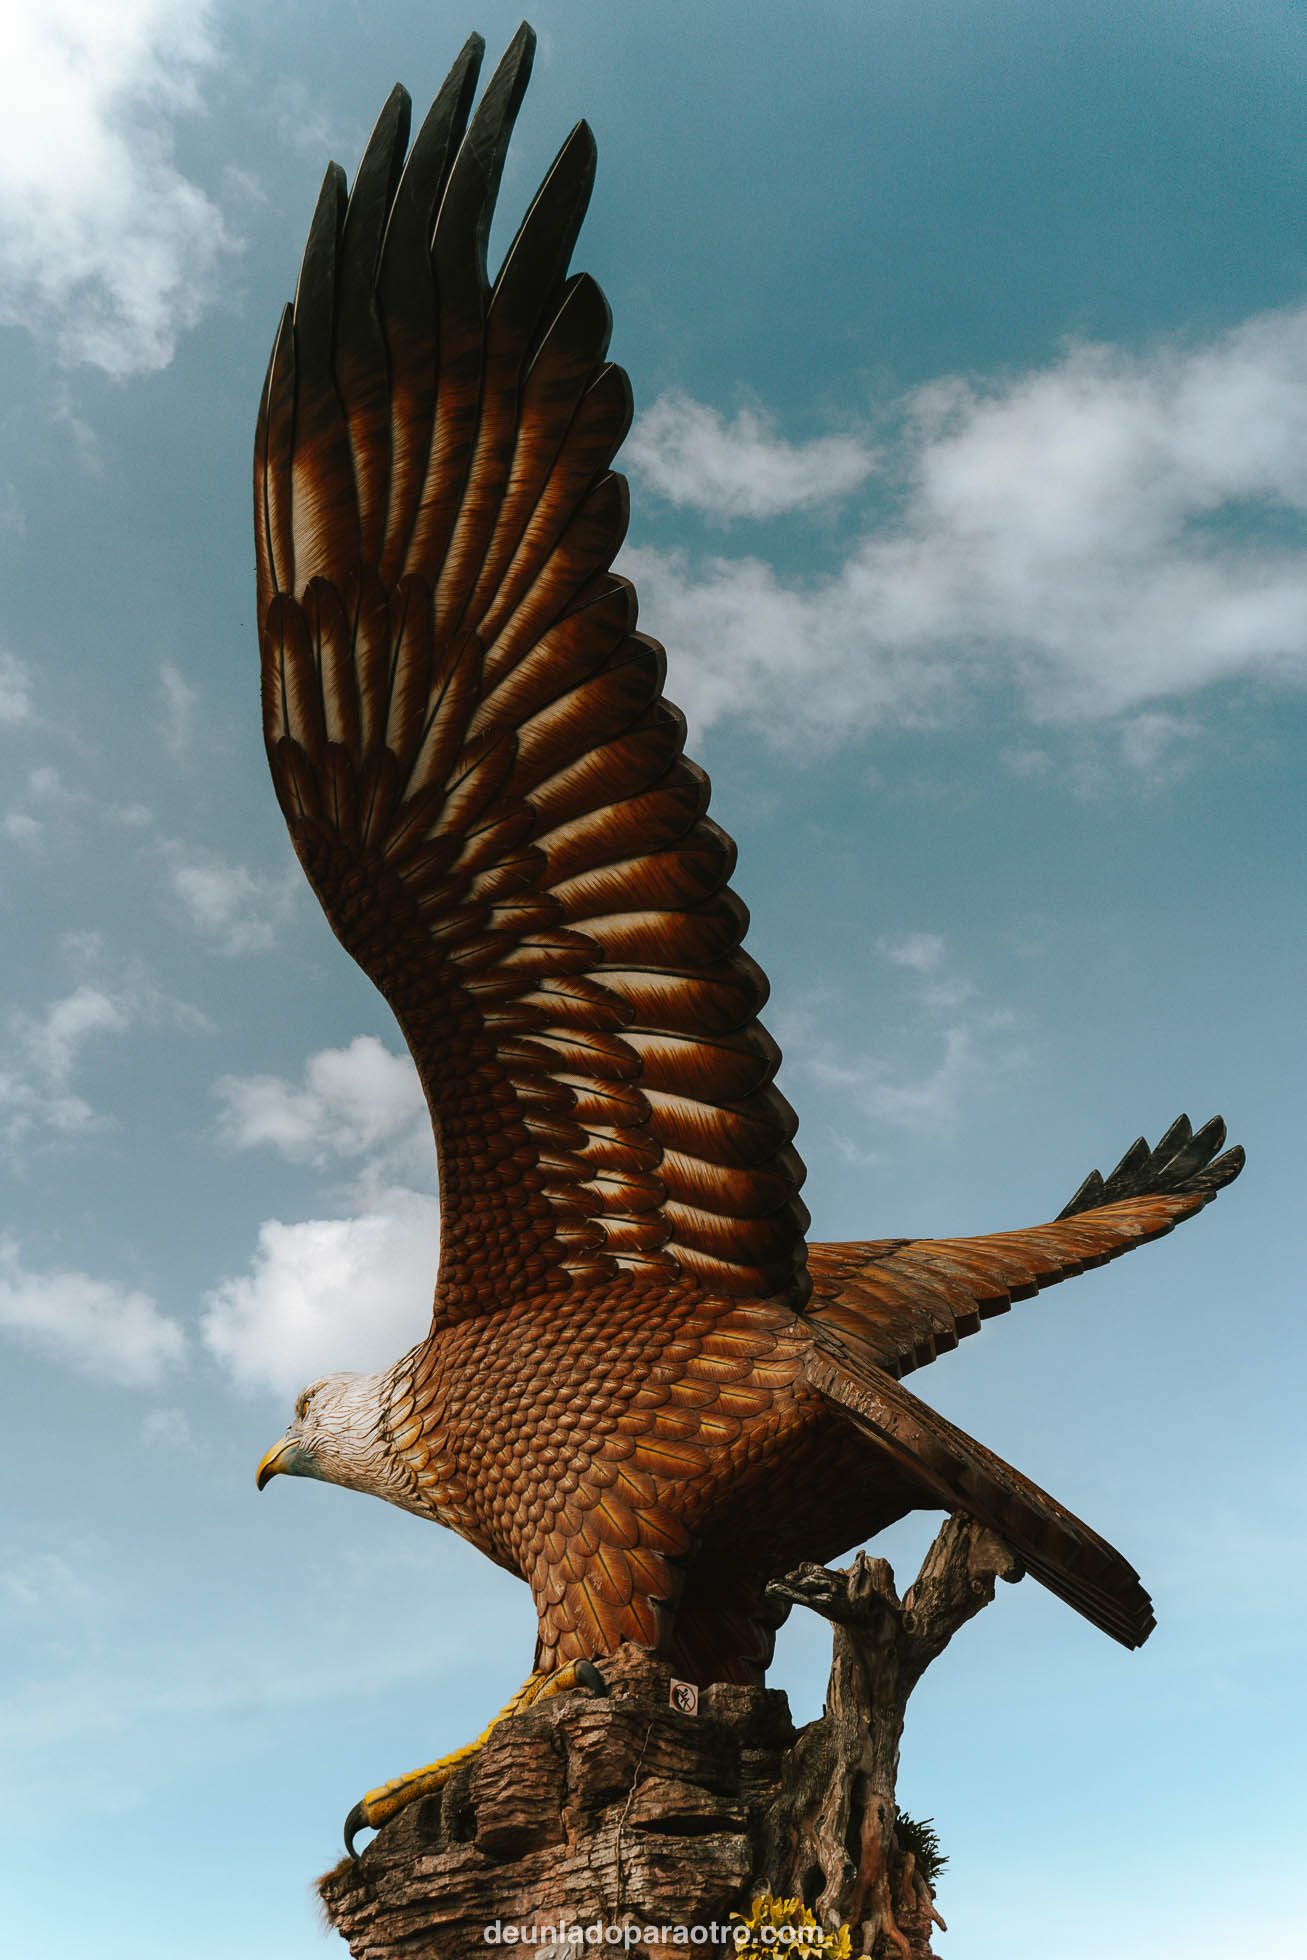 Algo que hacer en Langkawi, es visitar Eagle Square, una gran plaza que contiene una enorme escultura de 12 metros en forma de águila